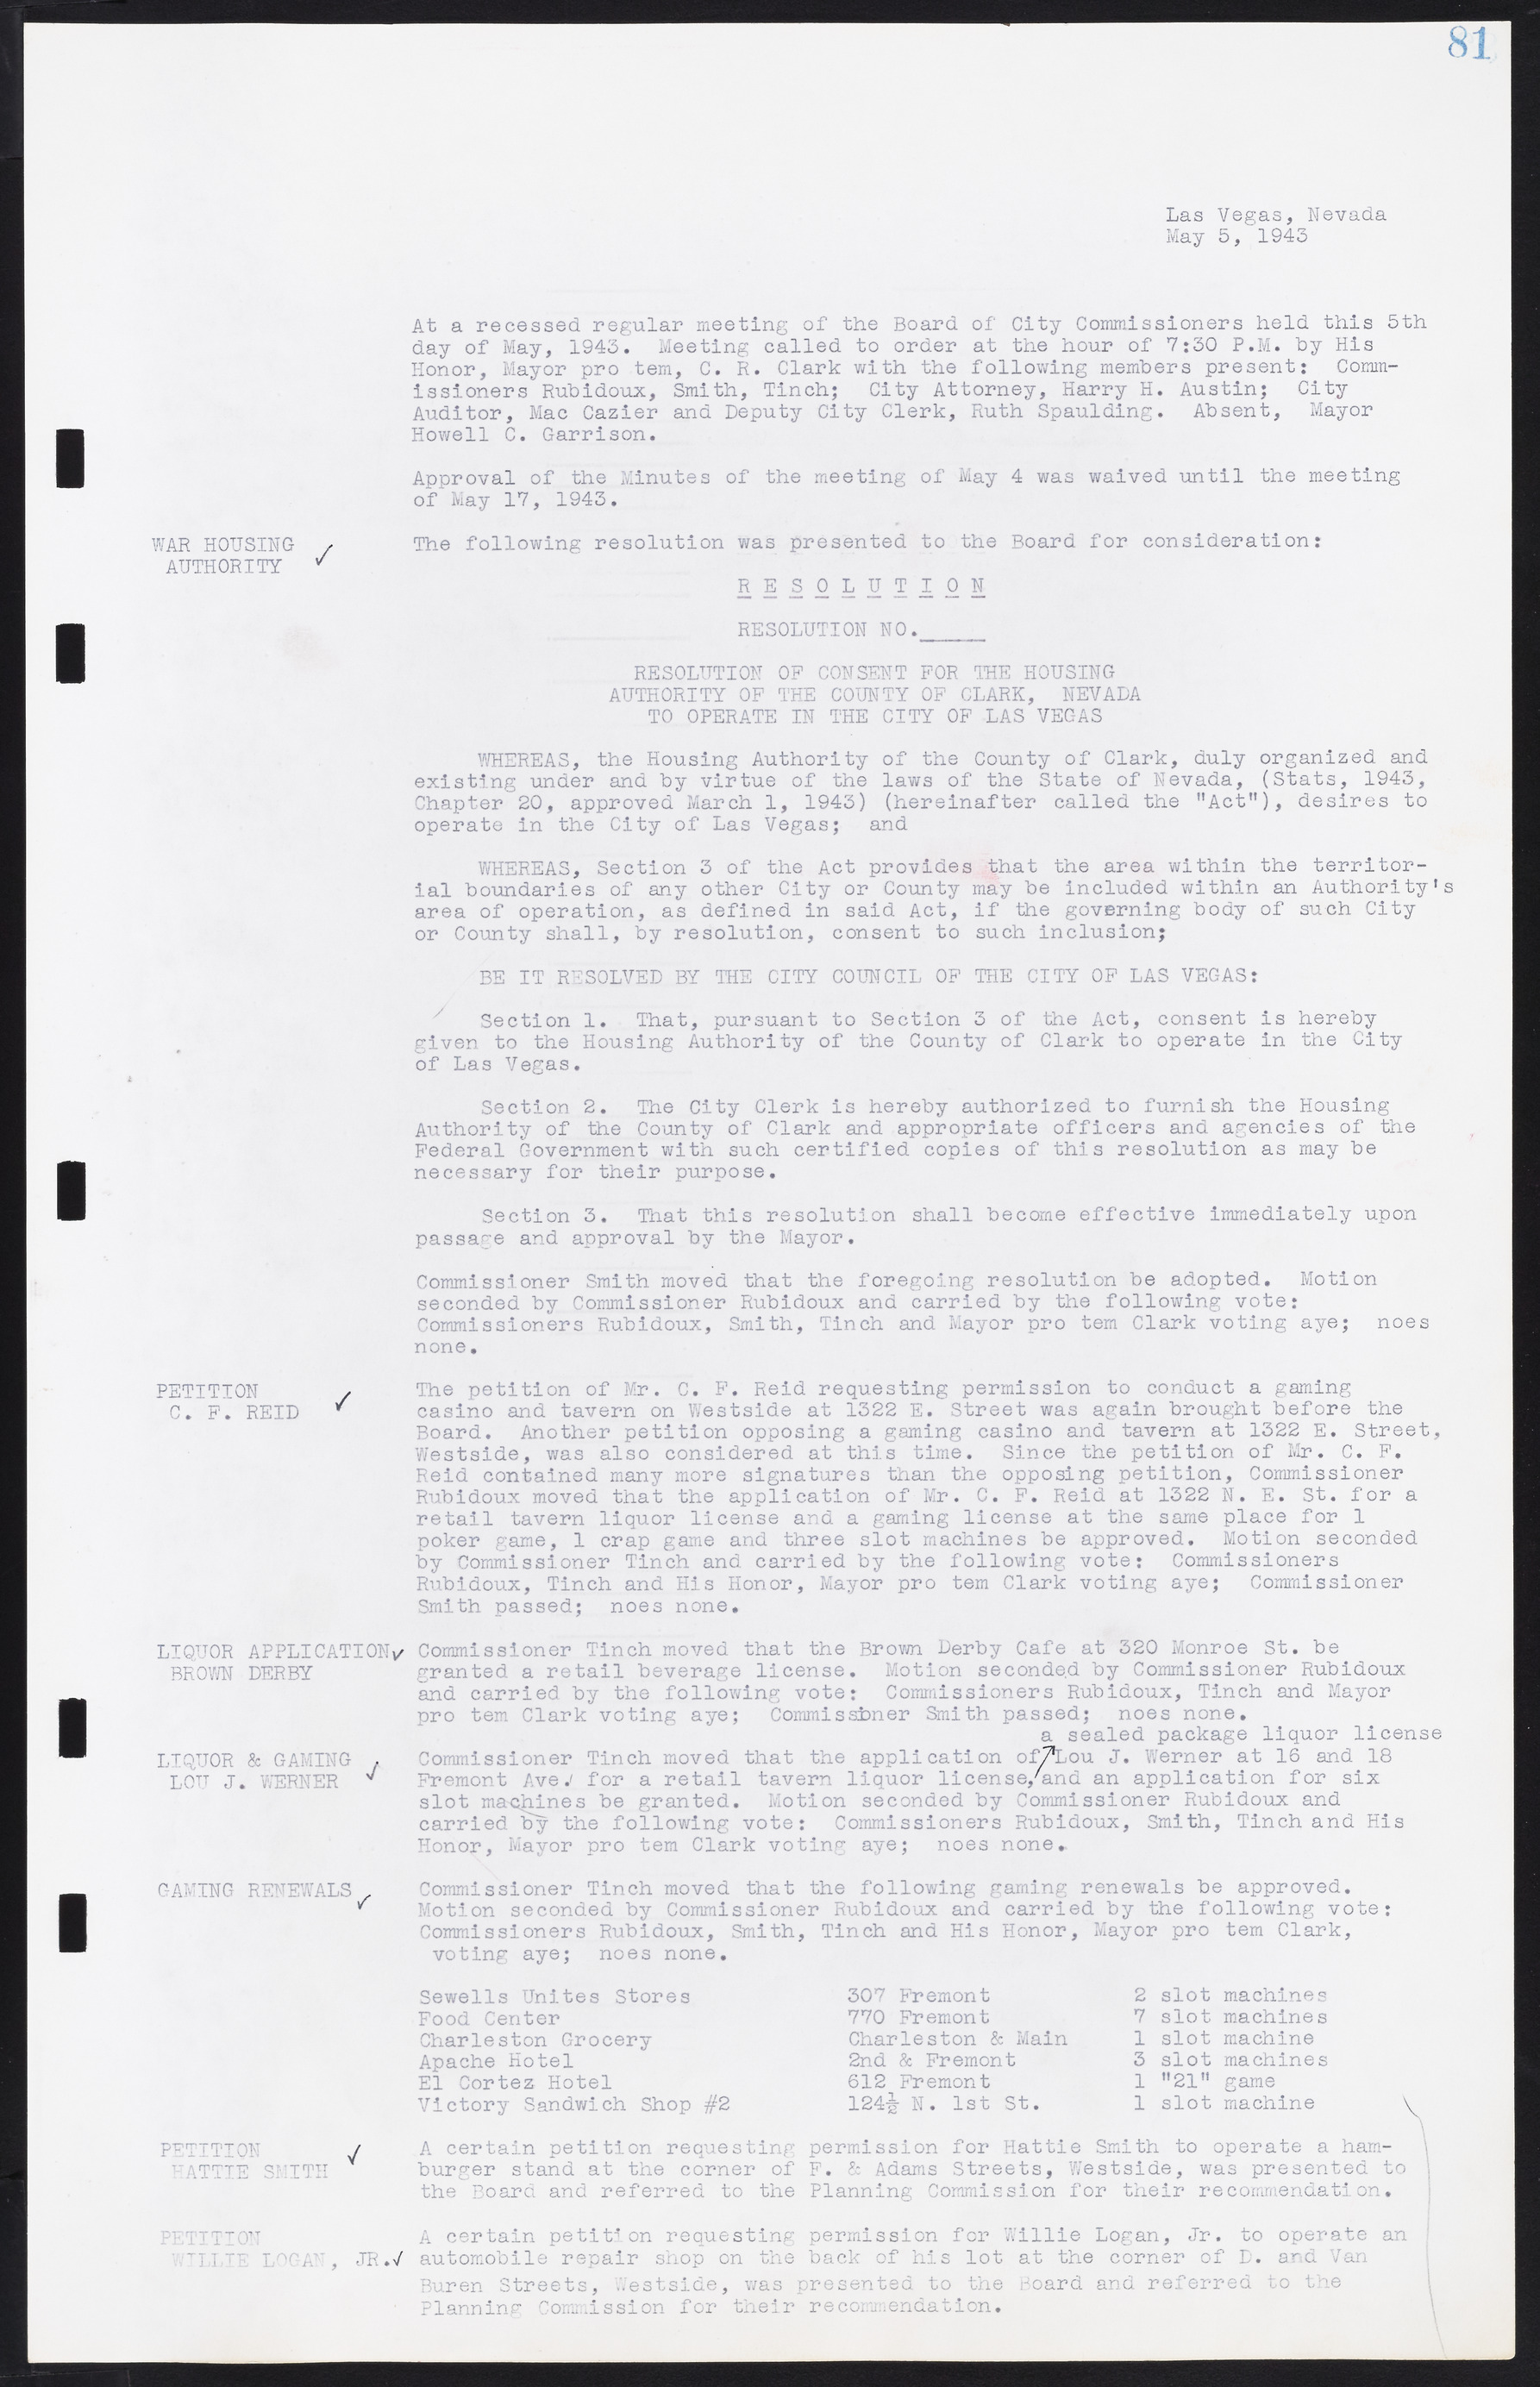 Las Vegas City Commission Minutes, August 11, 1942 to December 30, 1946, lvc000005-93